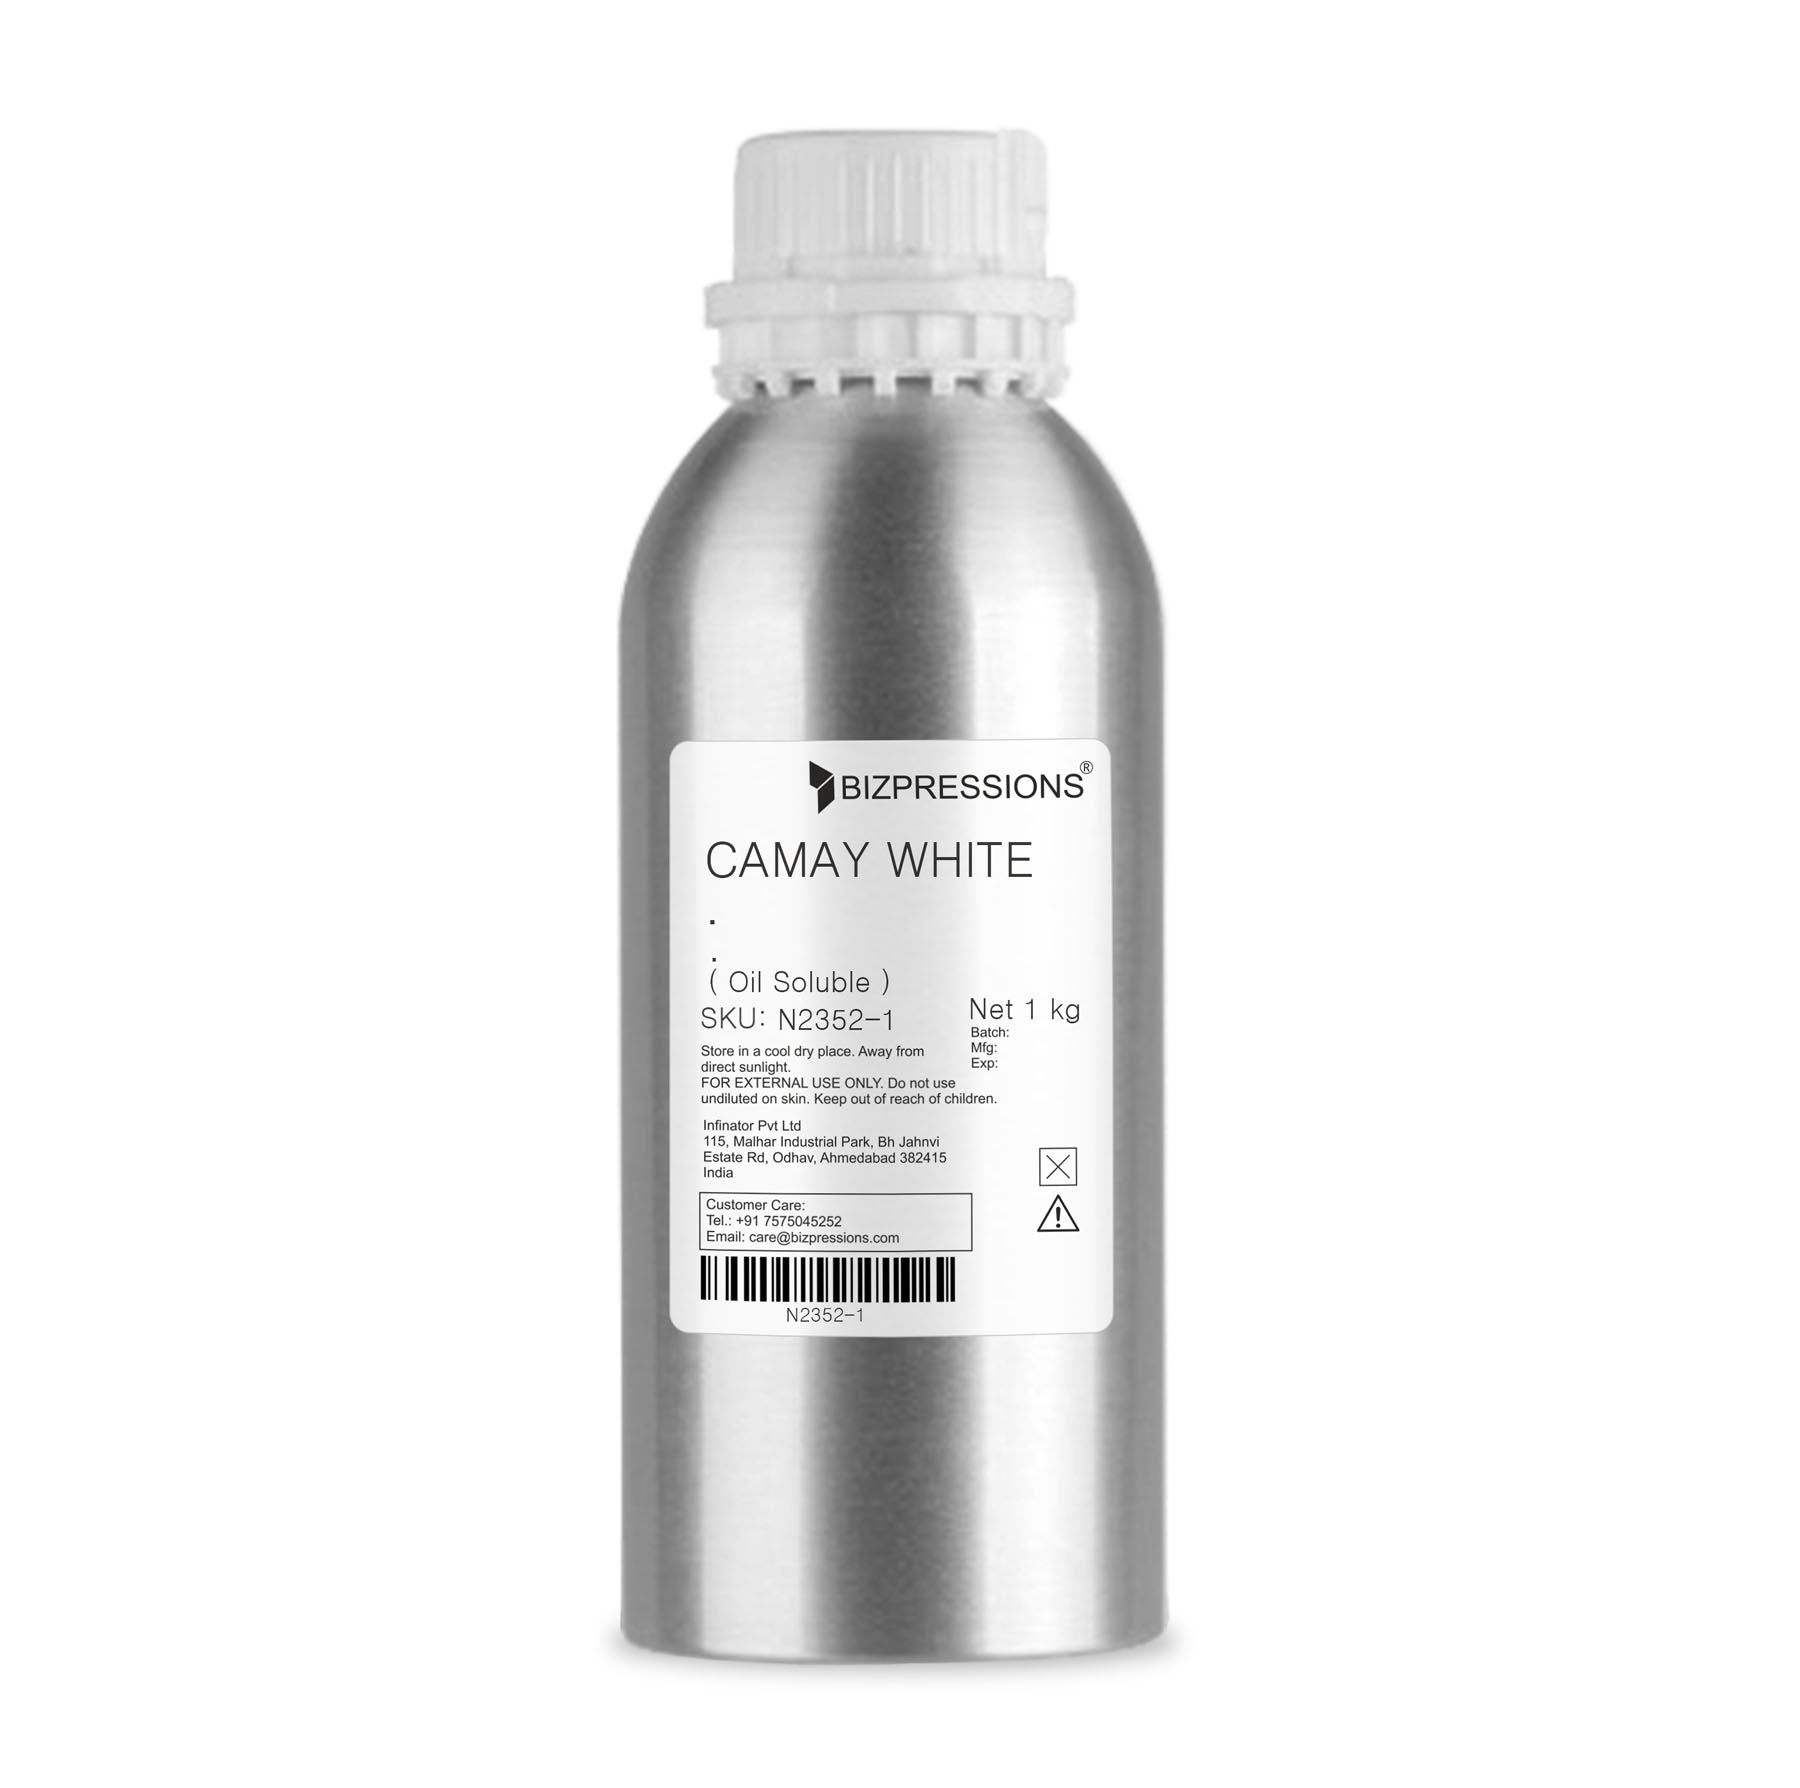 CAMAY WHITE - Fragrance ( Oil Soluble ) - 1 kg